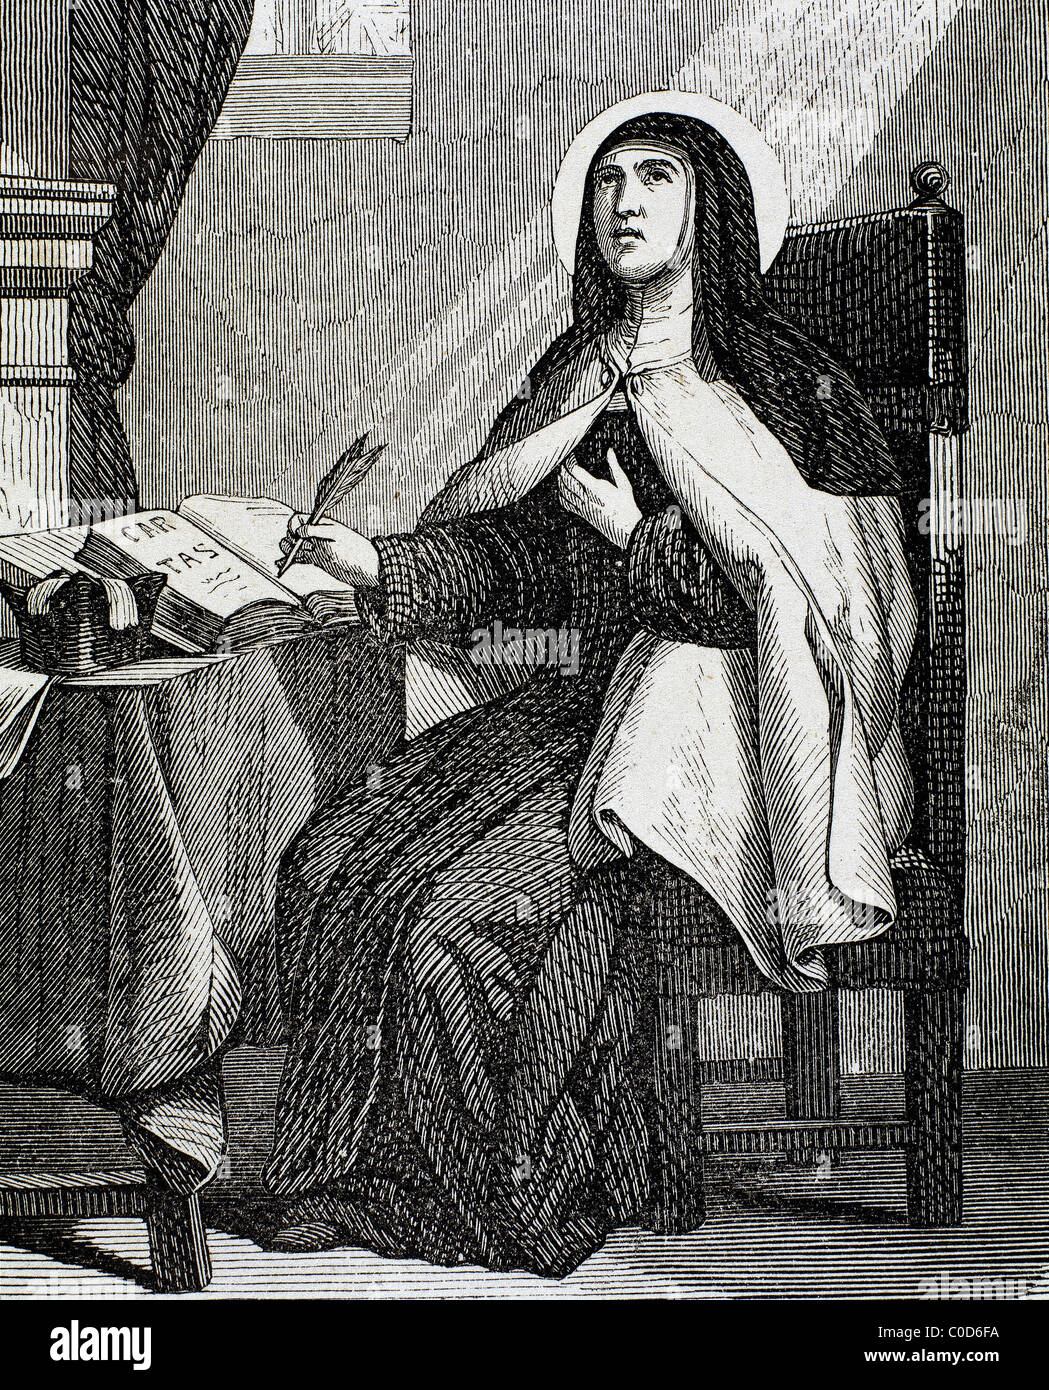 Teresa of Avila (1515-1582). Religious reformer of the Carmelite Order. Engraving by Capuz. Stock Photo